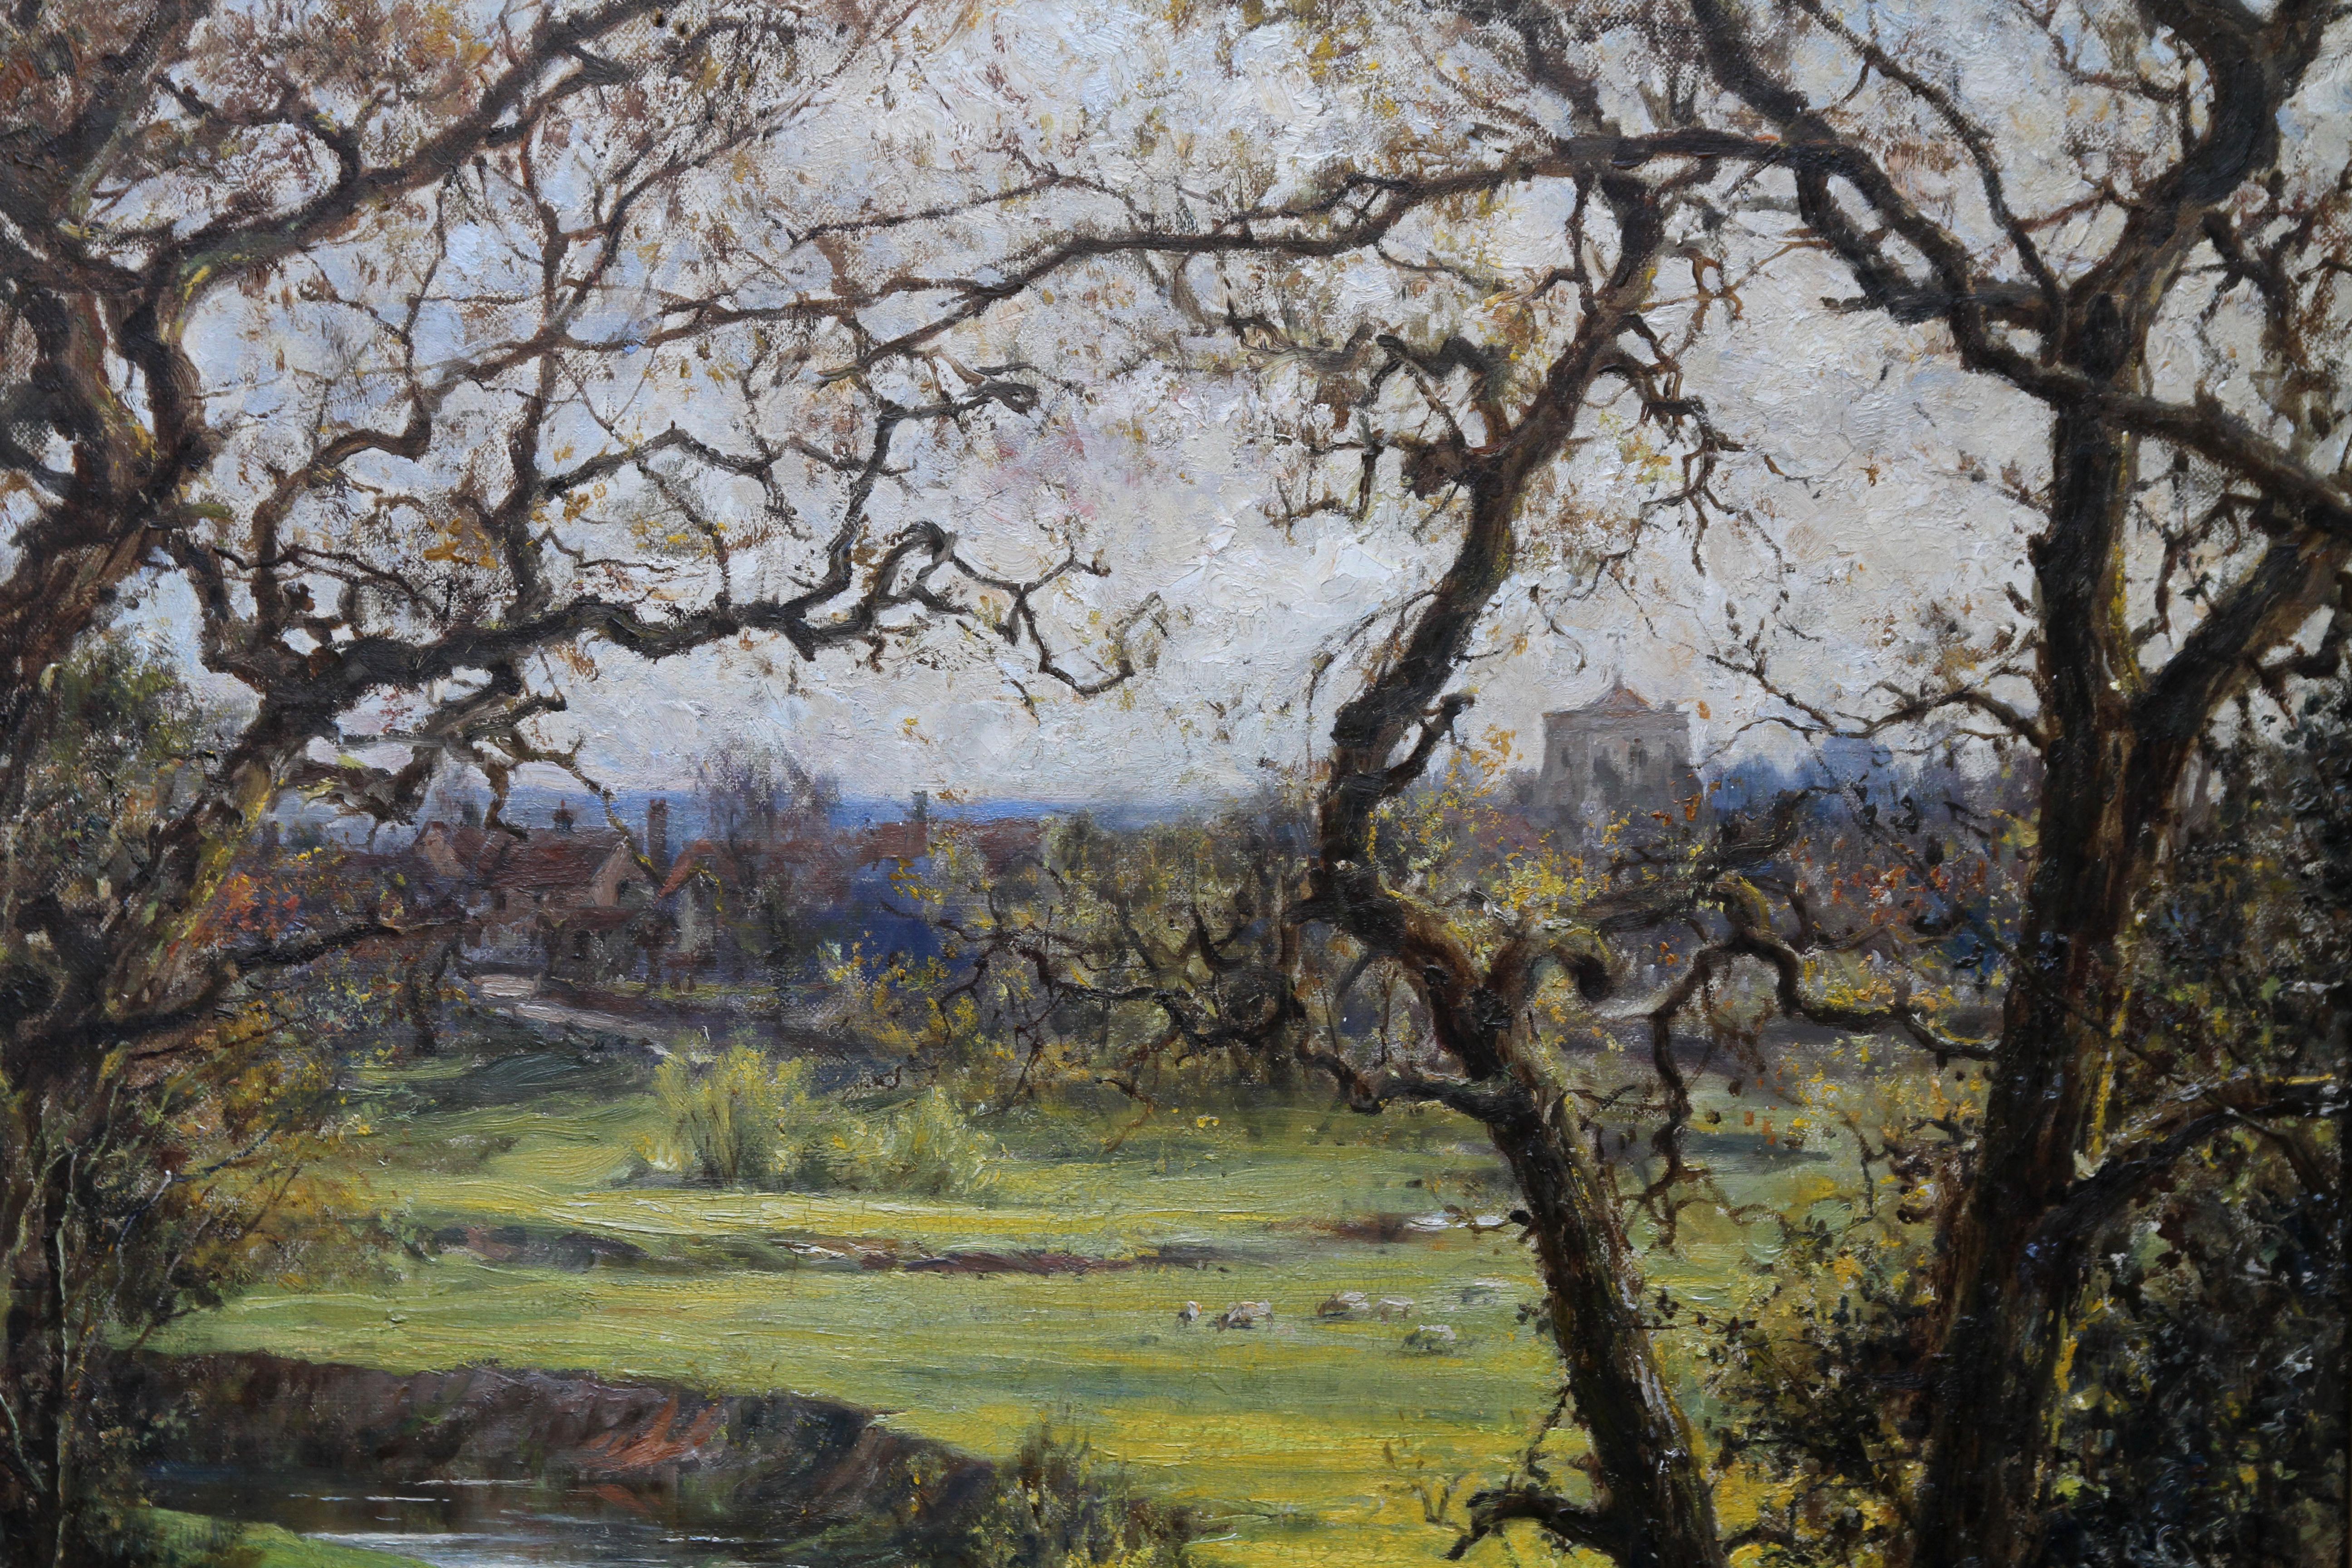 Ein sehr schönes Ölgemälde des britischen Impressionismus von Robert Morley.  Das Bild stammt aus der Zeit um 1911 und wurde möglicherweise in der Nähe von Frensham in Surrey gemalt, wo er lebte. Es sieht nach Frühling aus, da die Glockenblumen im